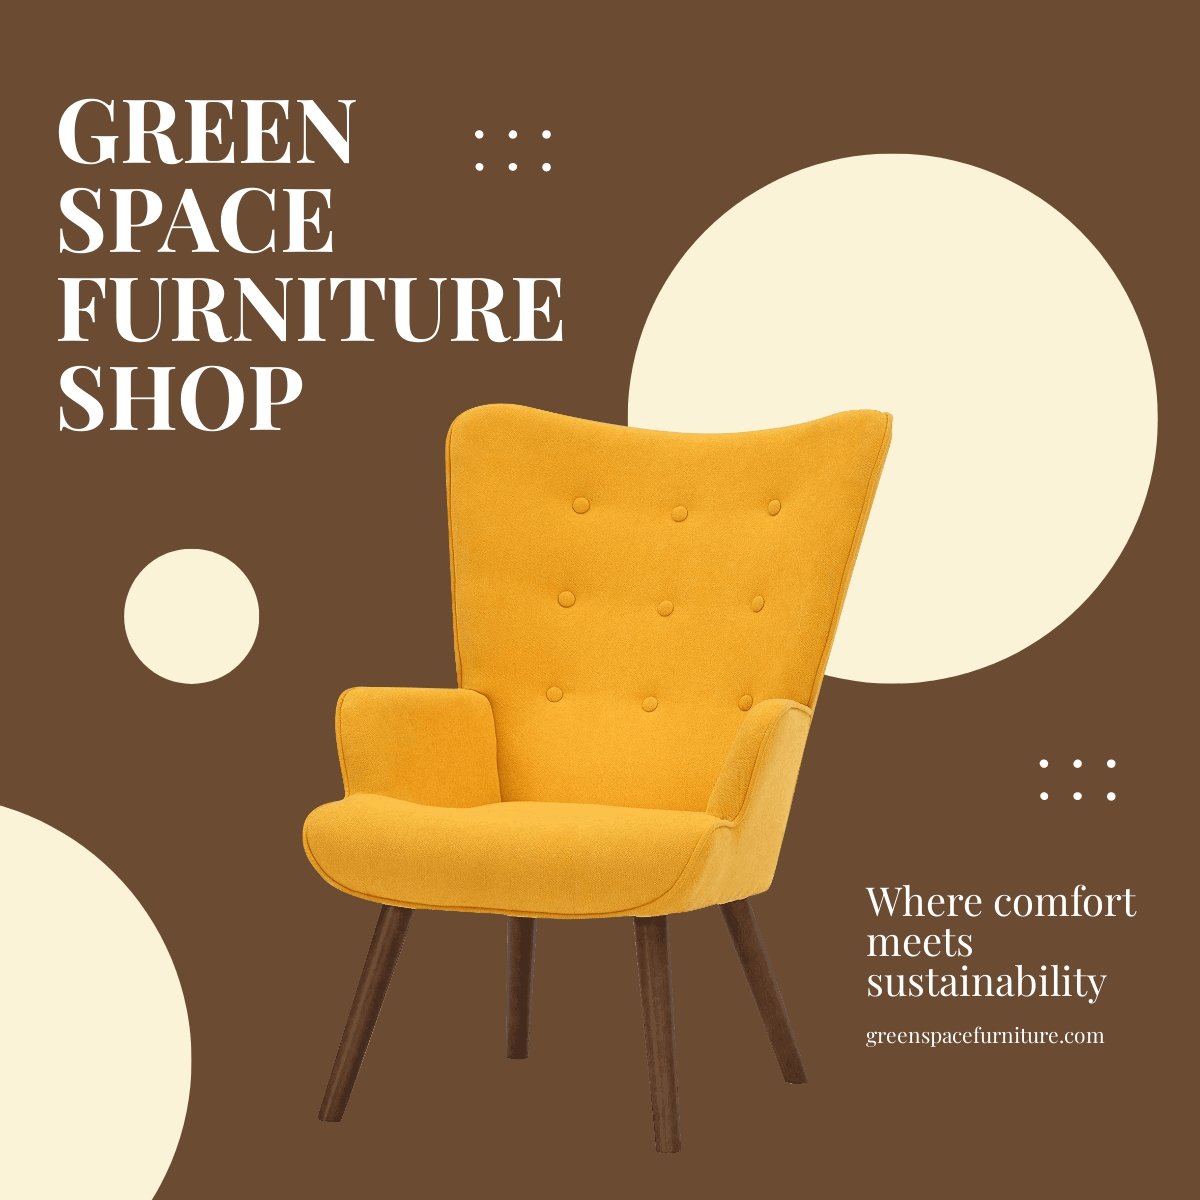 Online Furniture Shop LinkedIn Post Template